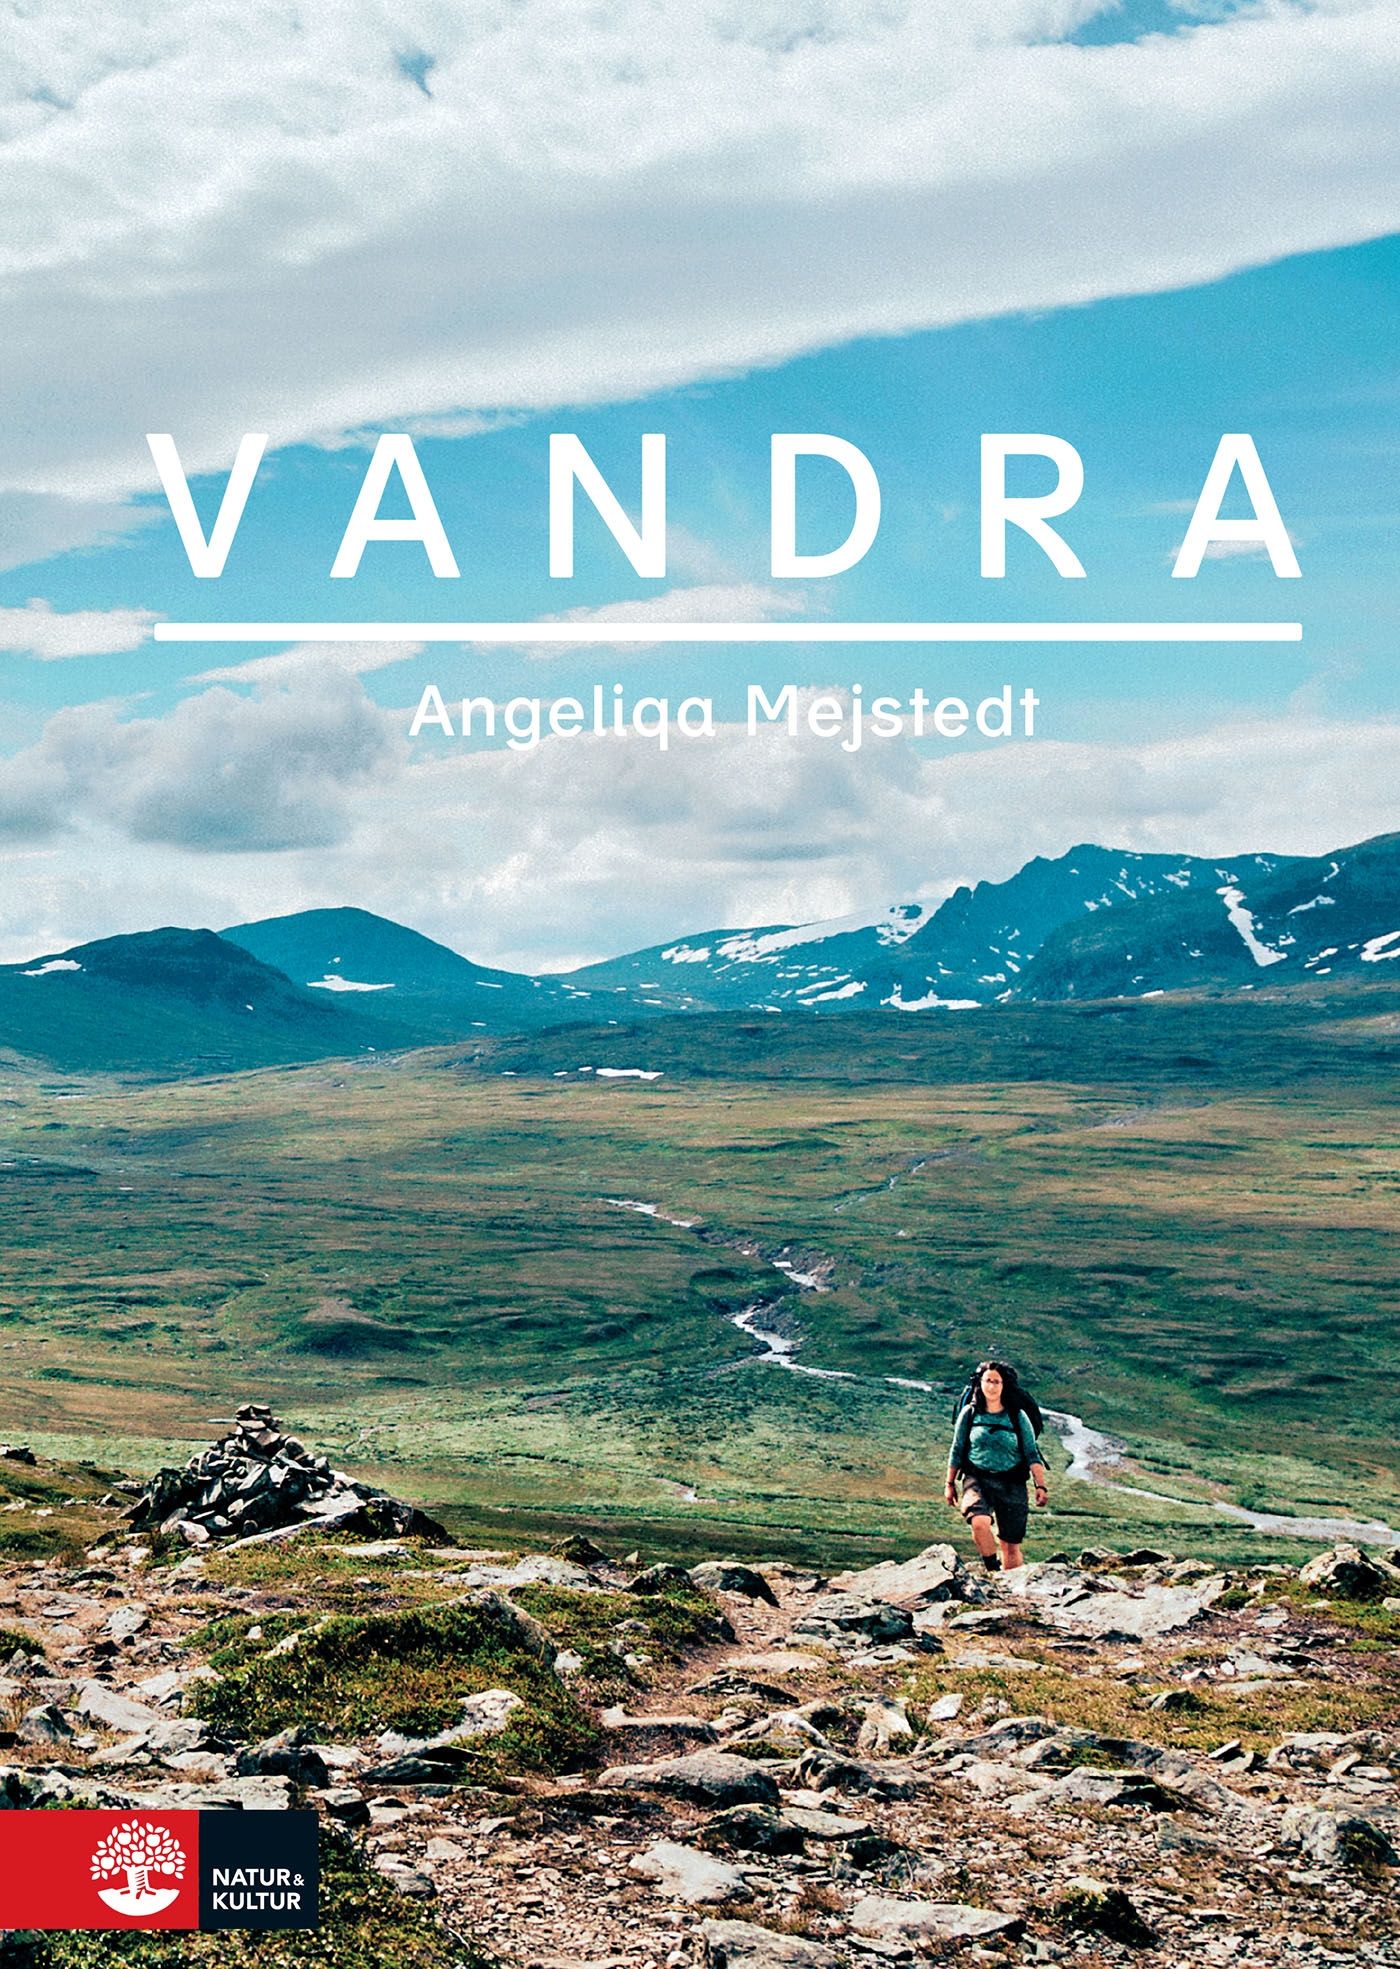 Vandra, e-bok av Angeliqa Mejstedt